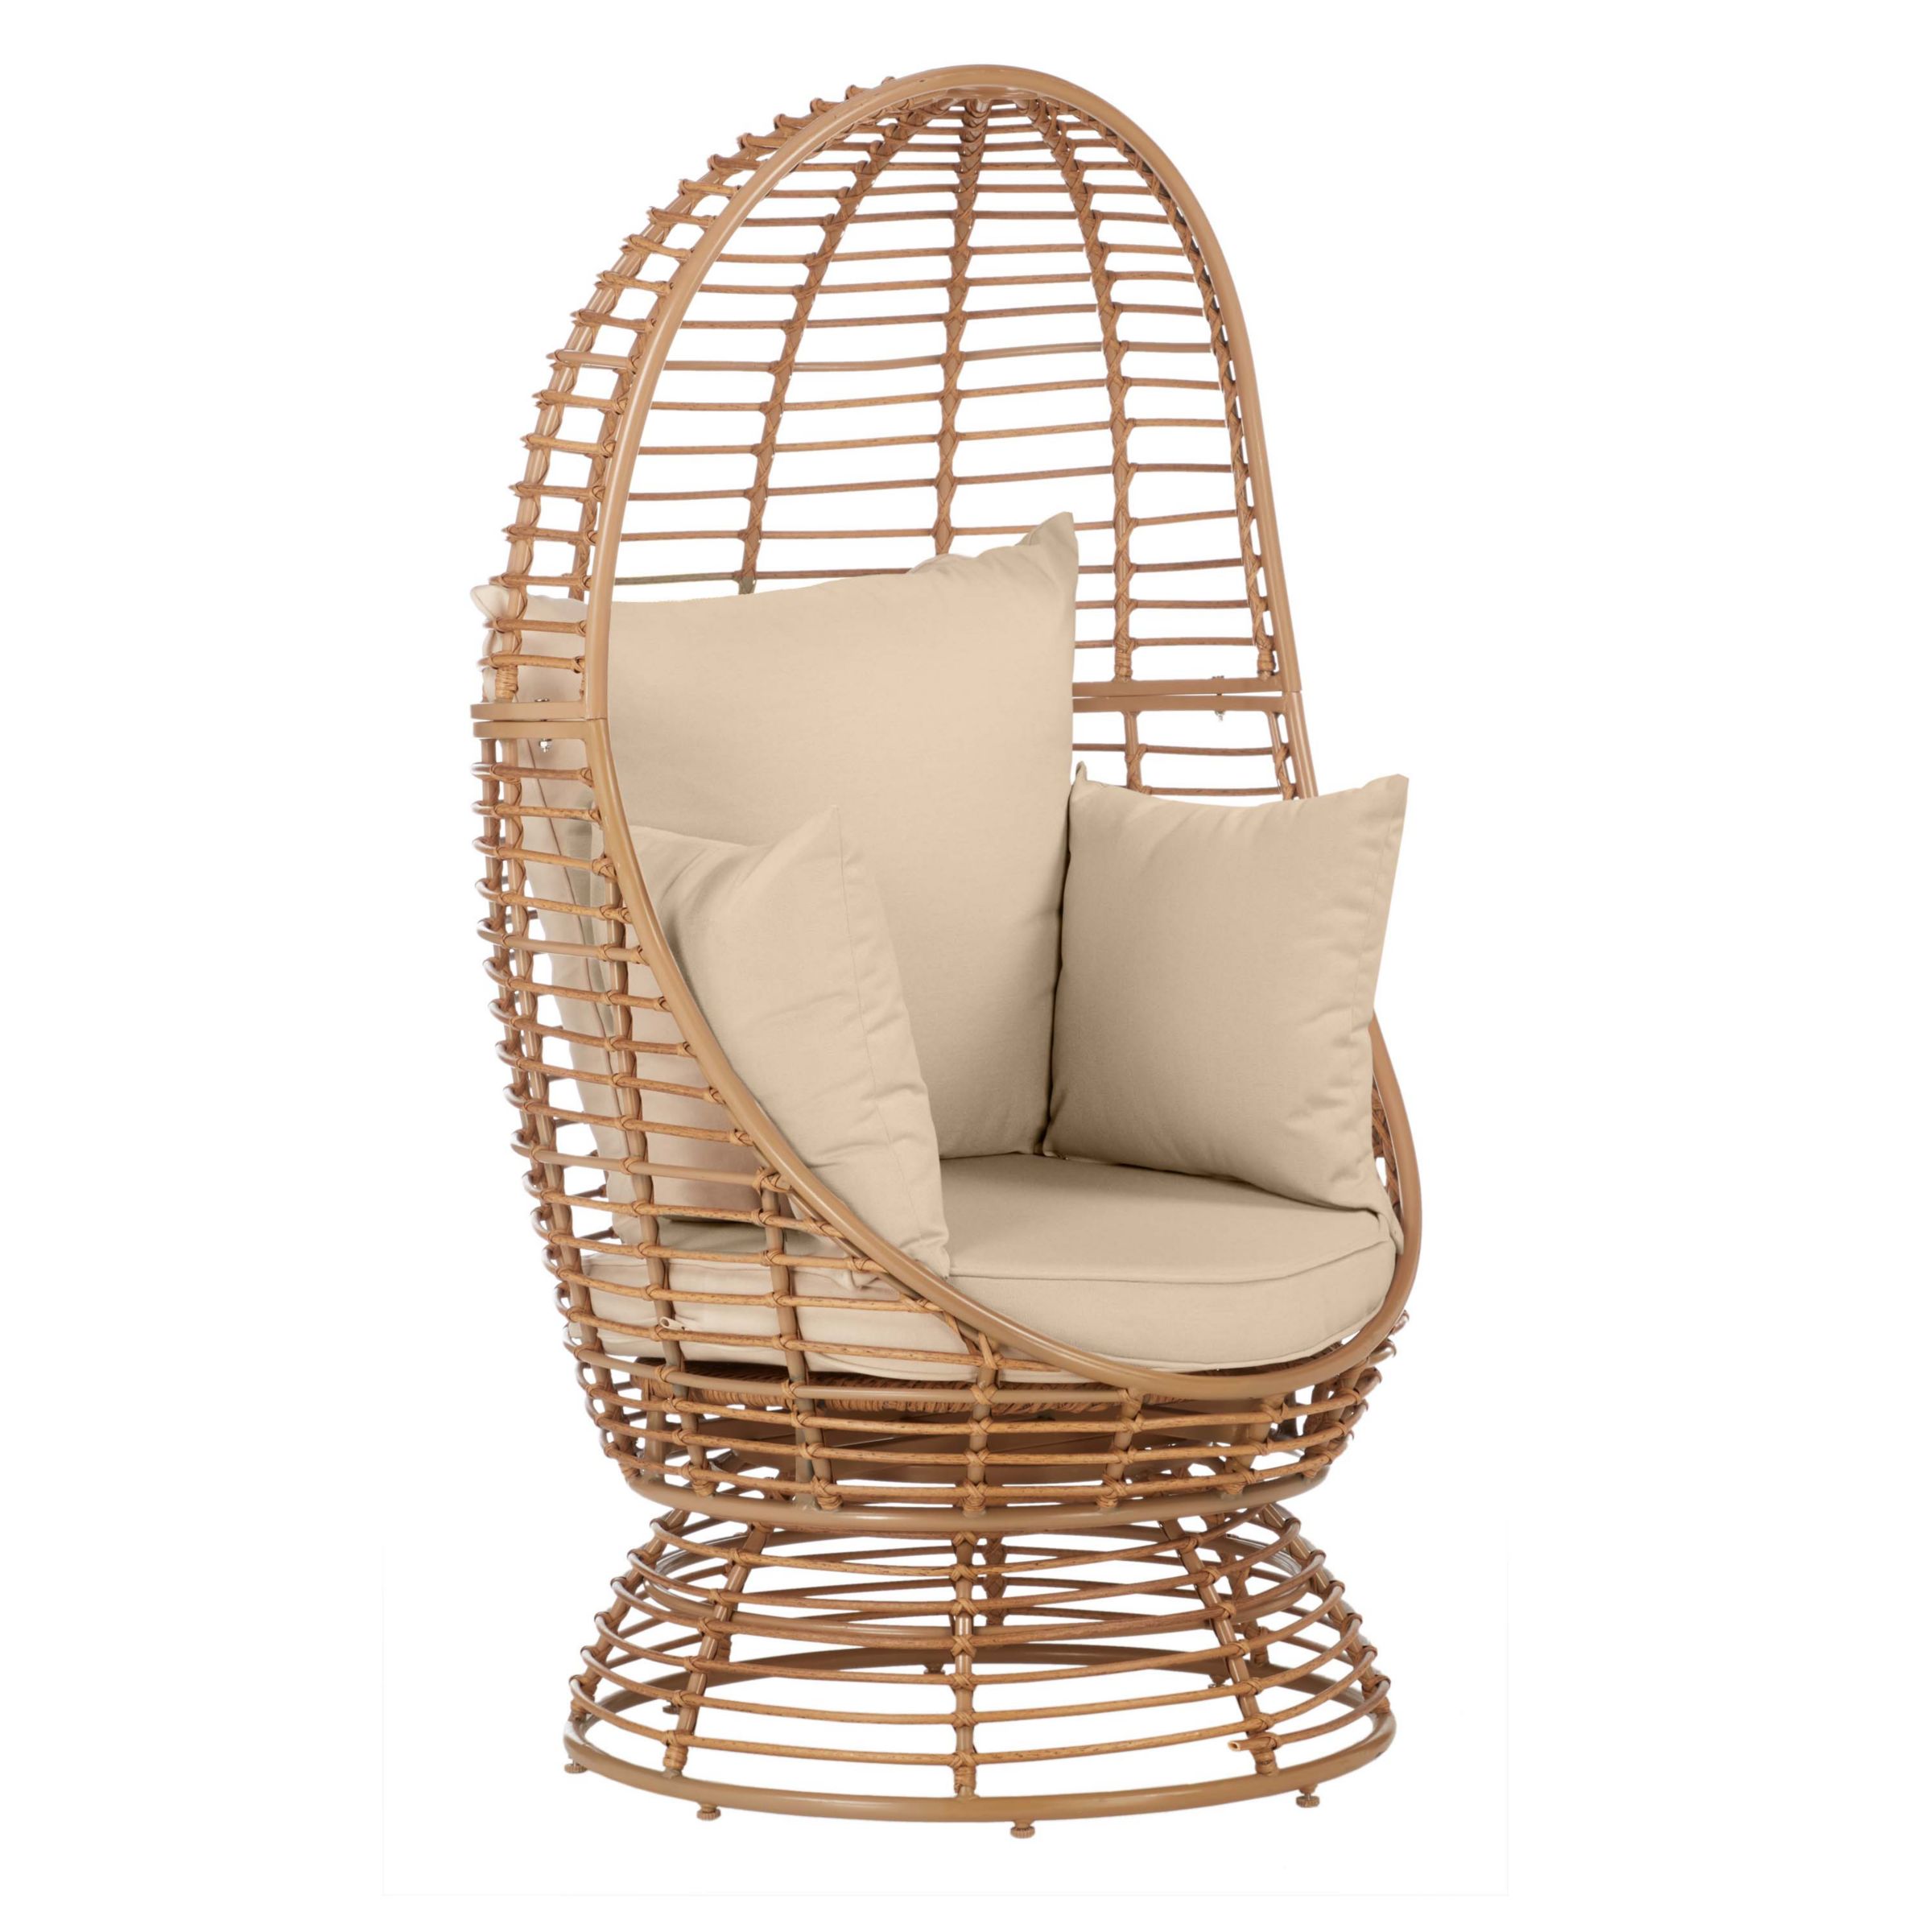 John Lewis & Partners Cabana Swivel Pod Garden Chair, Natural at John